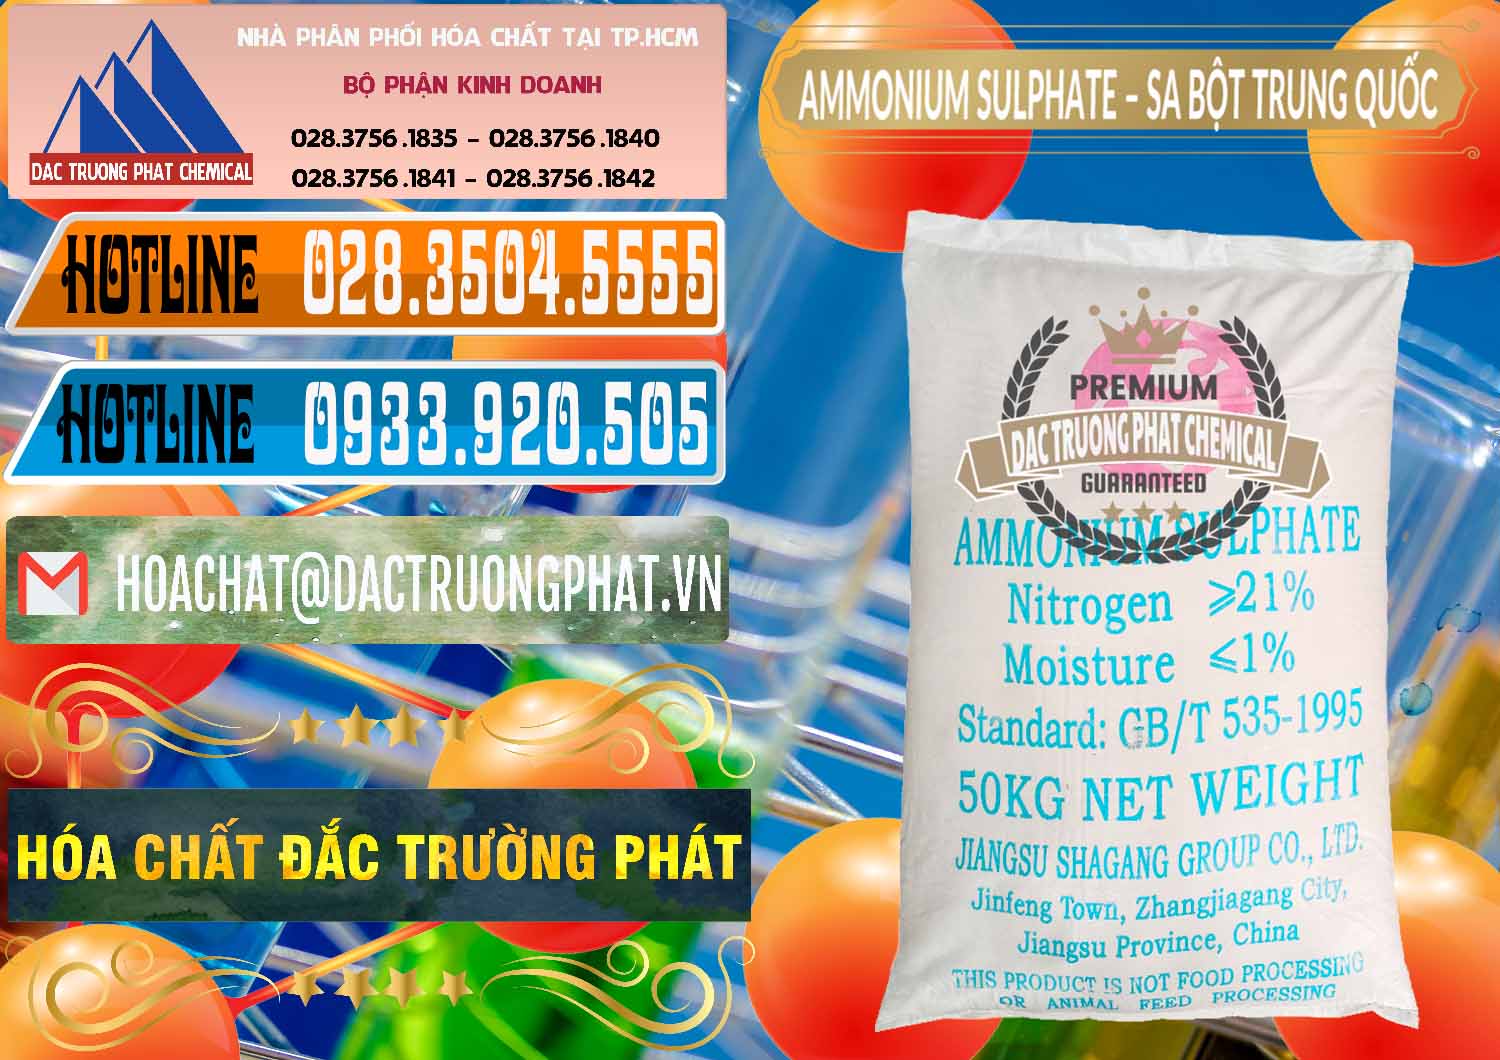 Cty cung cấp và bán Ammonium Sulphate – Phân Sa Trung Quốc China - 0024 - Chuyên cung cấp _ phân phối hóa chất tại TP.HCM - stmp.net